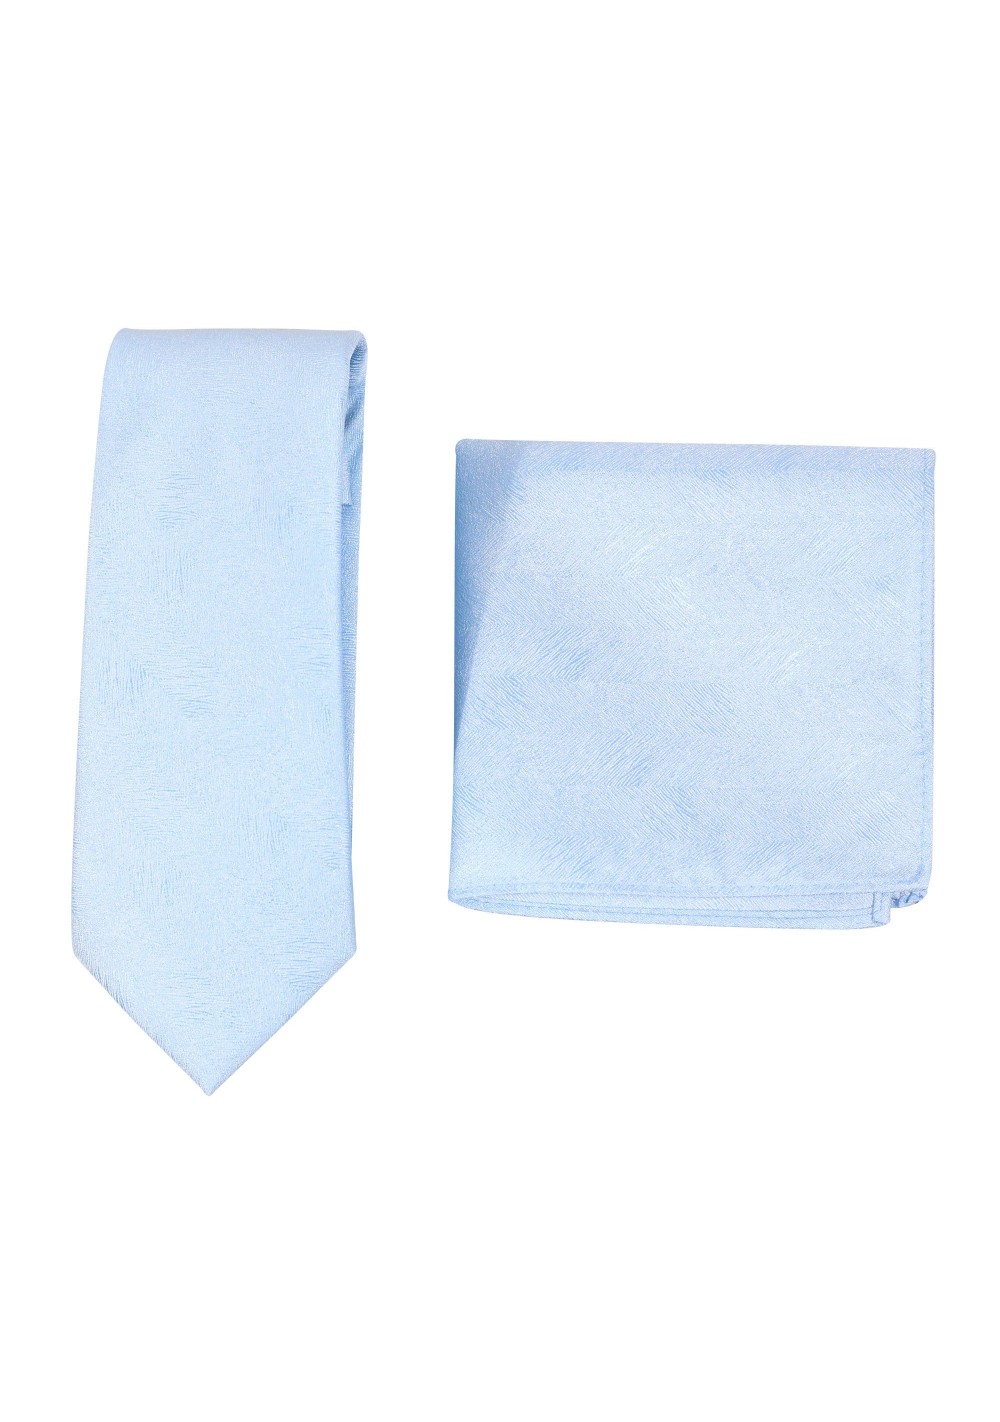 Woodgrain Texture Necktie Set in Ice Blue